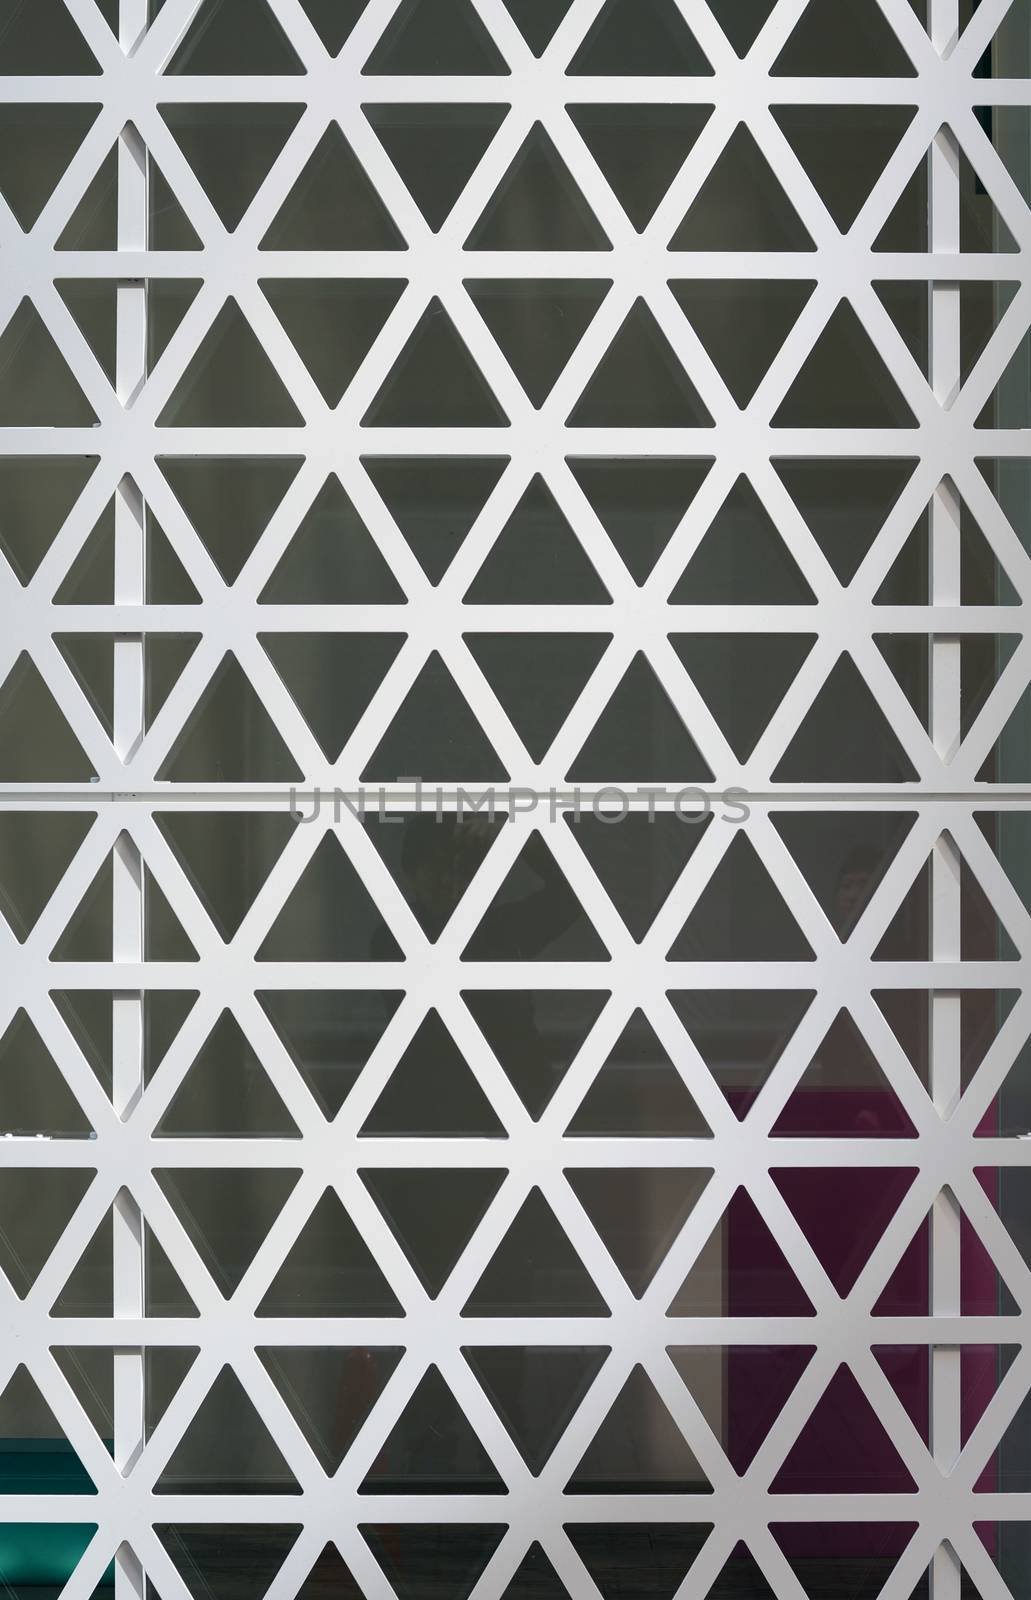 Hexagons steel facade background